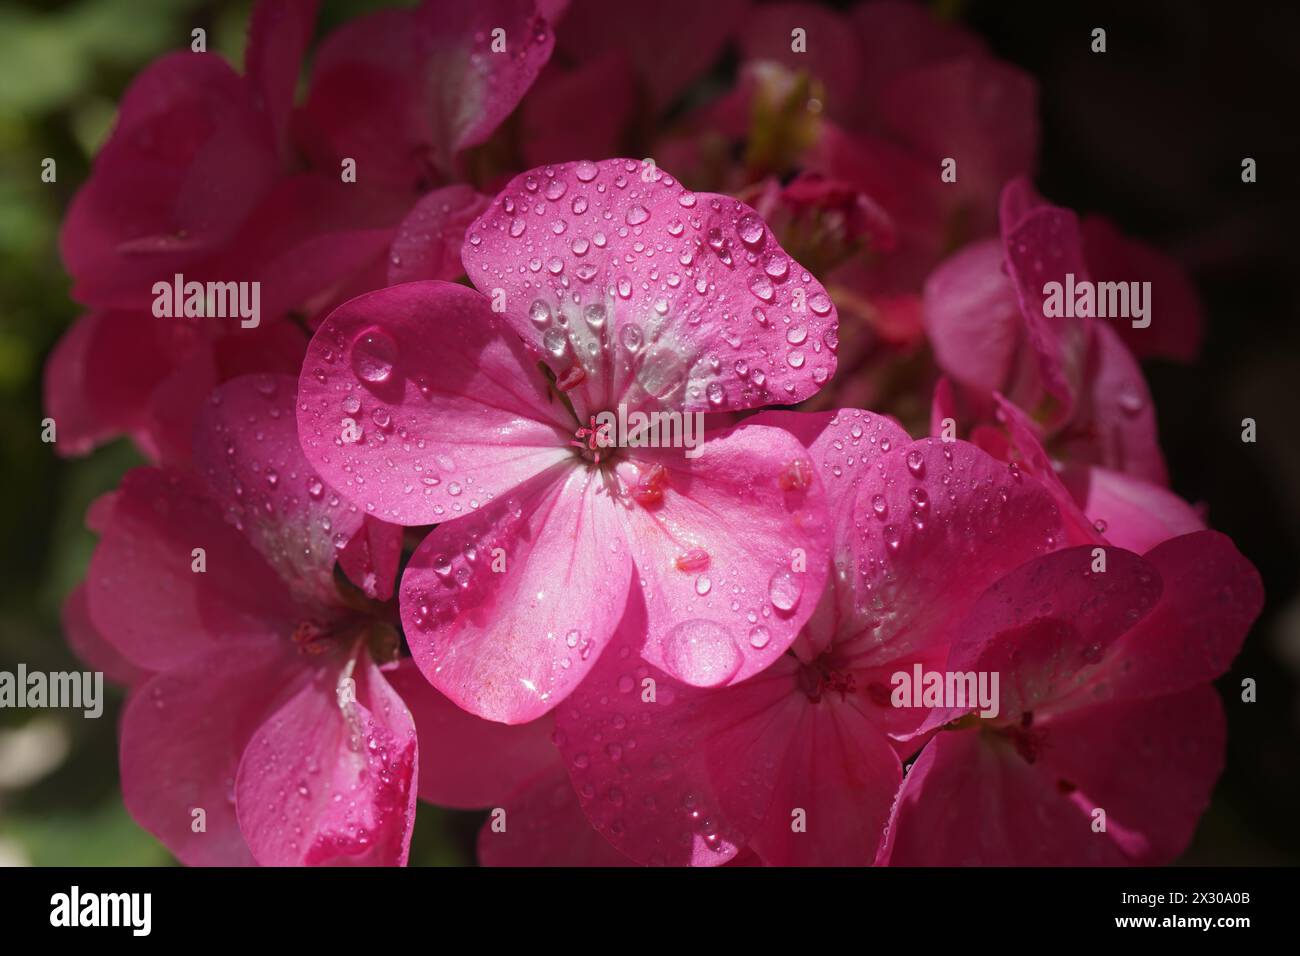 Pink flower of Geranium, Pelargonium, Geraniaceae,close up Stock Photo